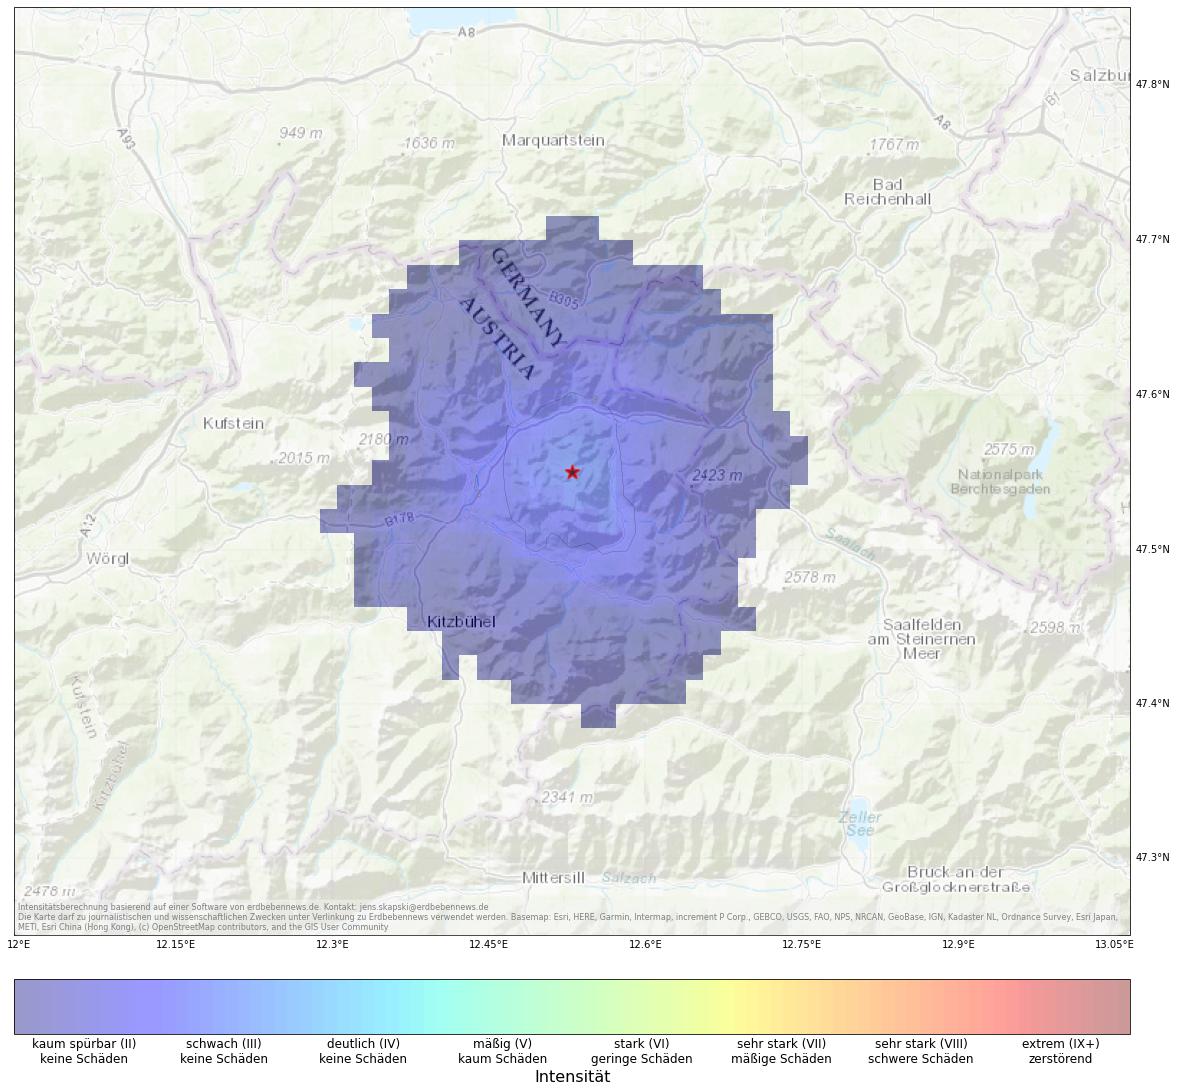 Berechnete Intensität (ShakeMap) des Erdbebens der Stärke 3.0 am 13. Januar, 2:58 Uhr in Österreich